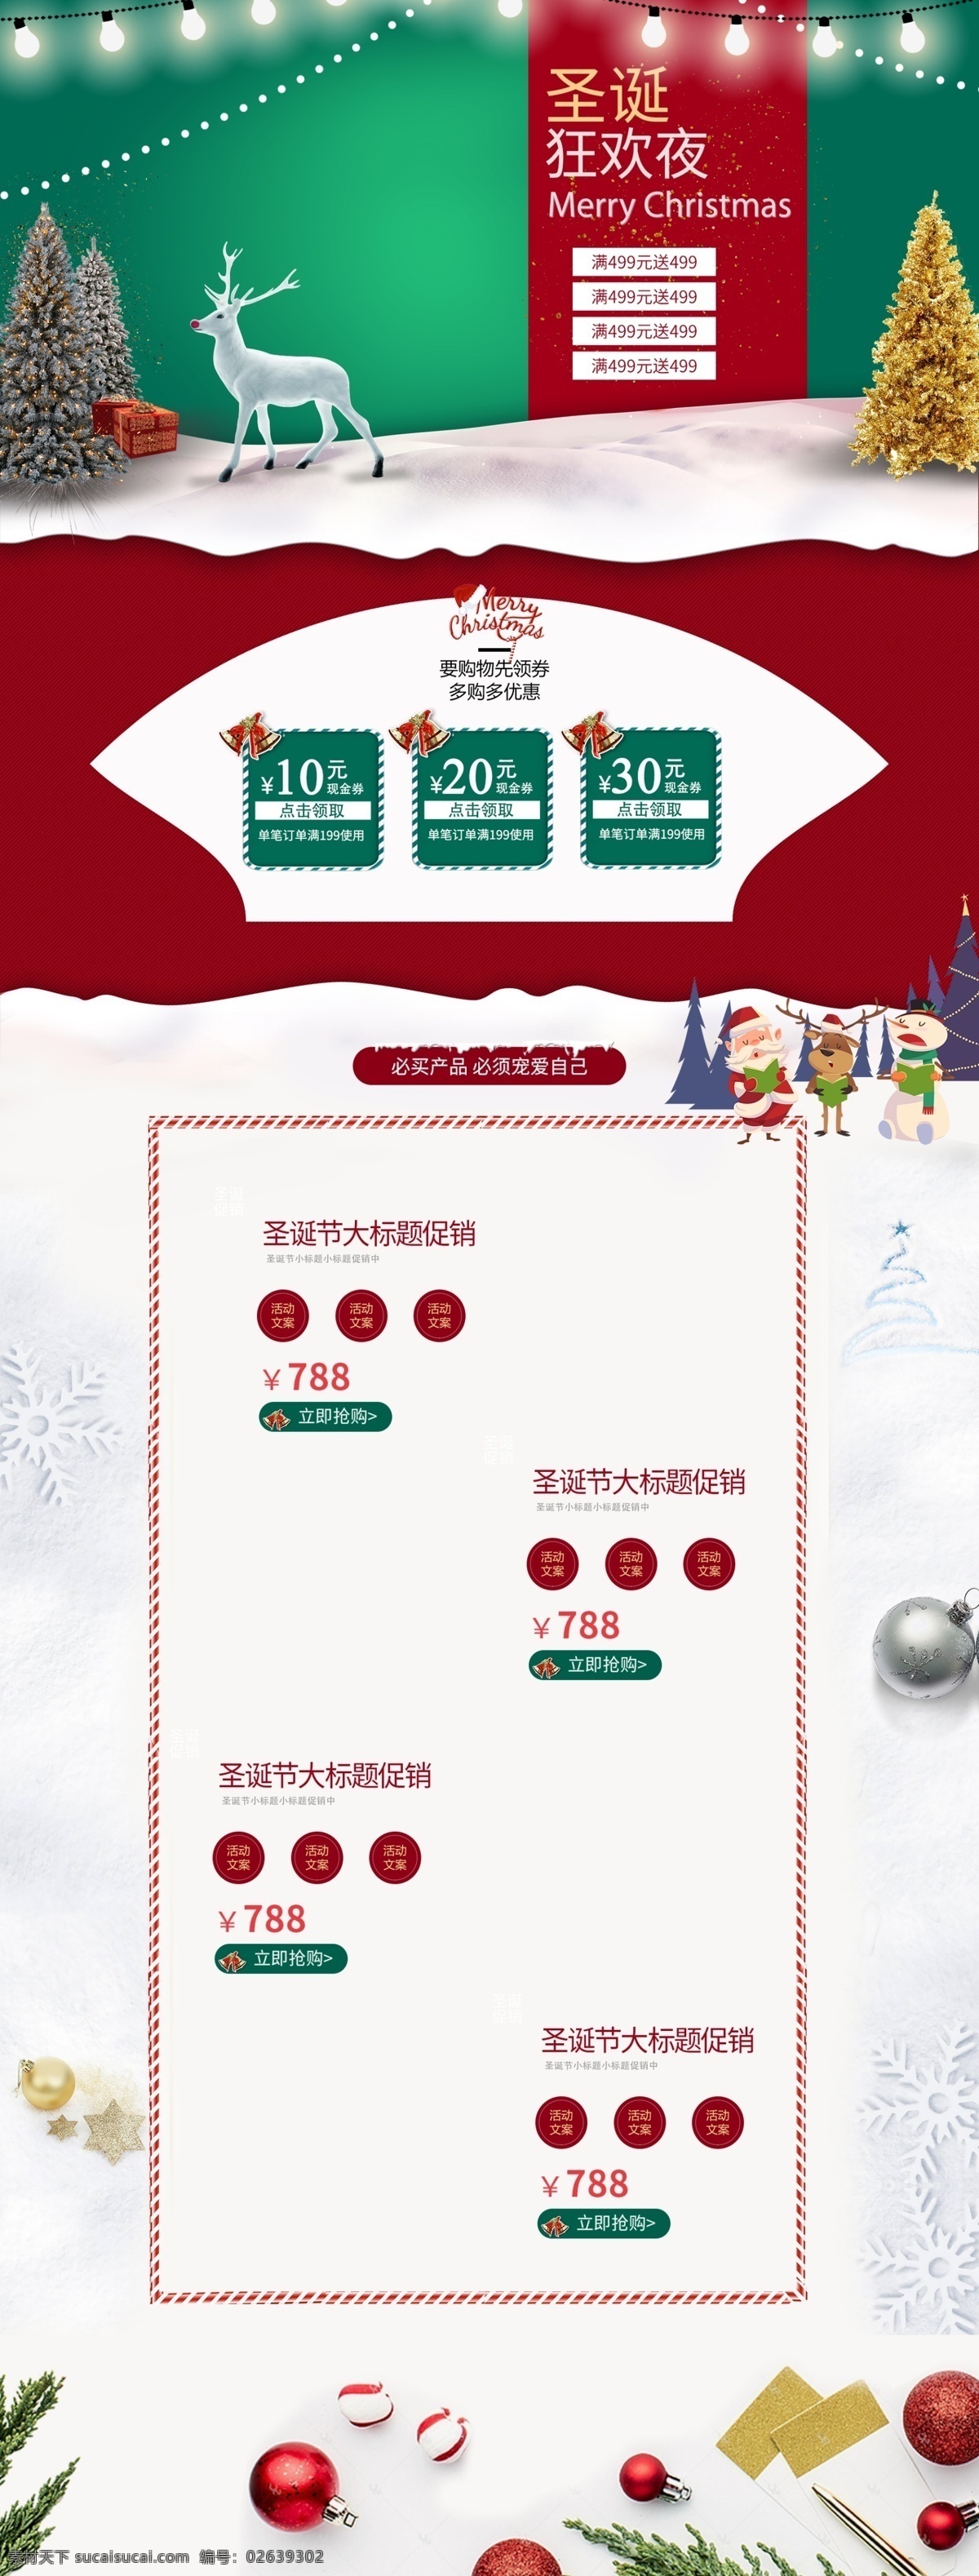 红 绿色 圣诞 狂欢 嘉年华 首页 模板 红绿色背景 淘宝电商 圣诞狂欢 大促销 psd源文档 优惠券 圣诞老人 圣诞鹿 树 灯 首页设计